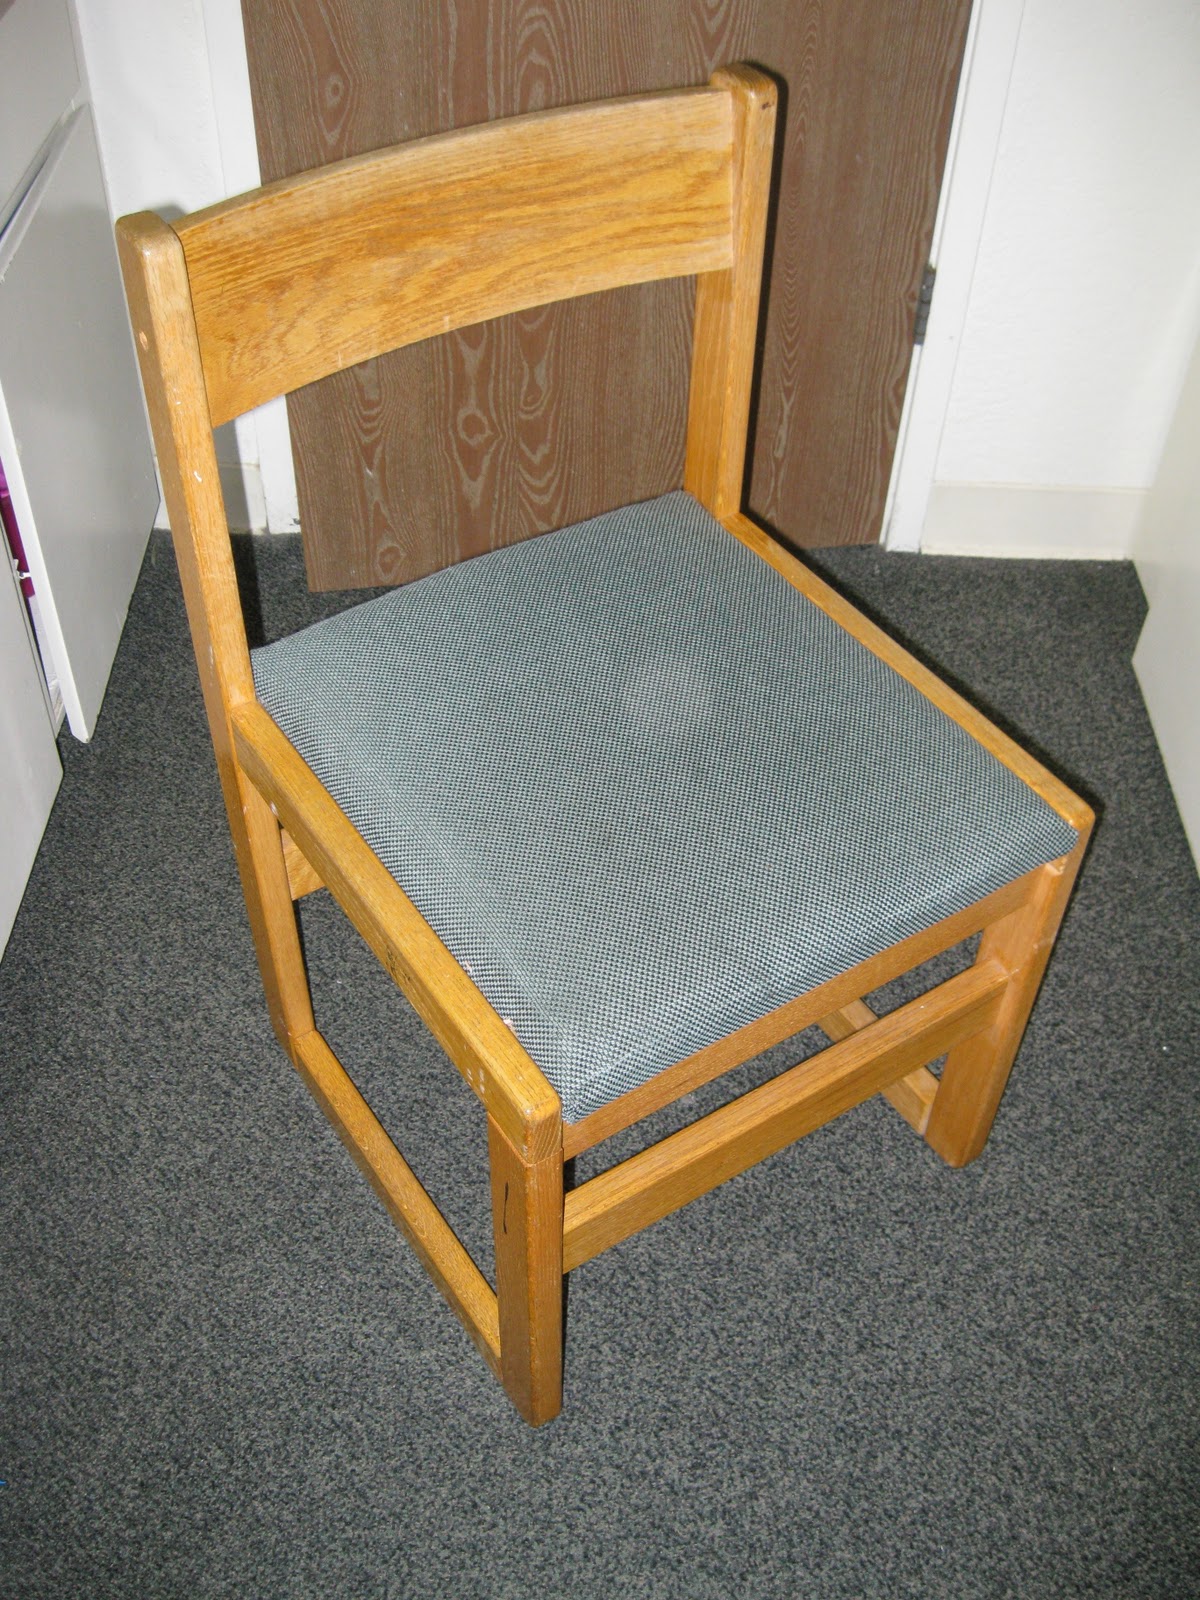 dorm desk chair slipcover